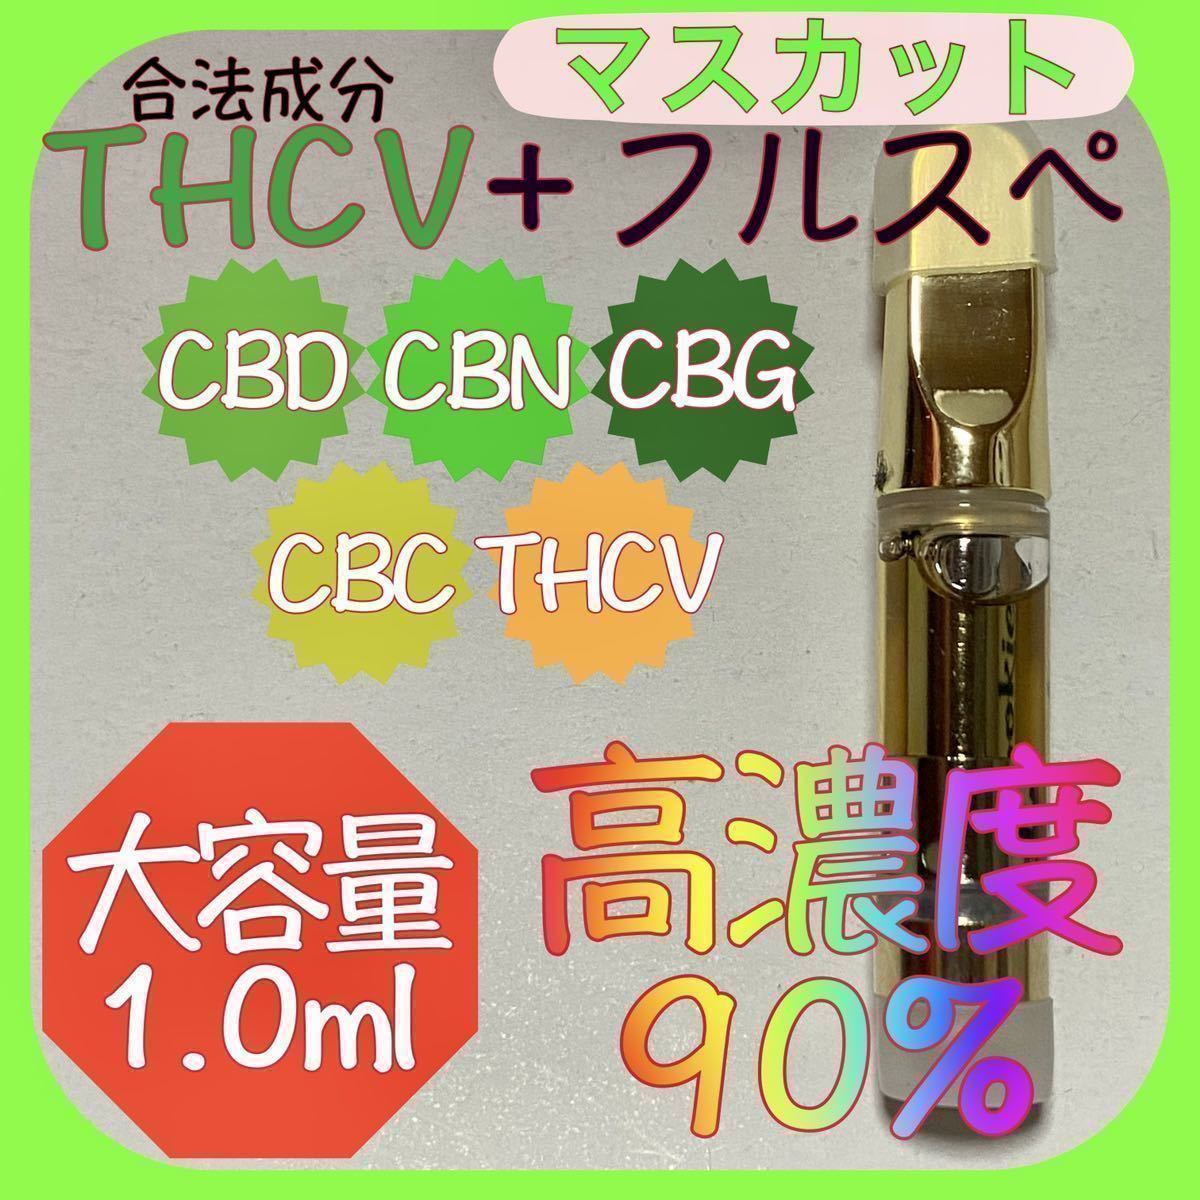 公式サイト 初回お試し THCV CRD H4 CBD オリジナルHリキッド1.0ml 